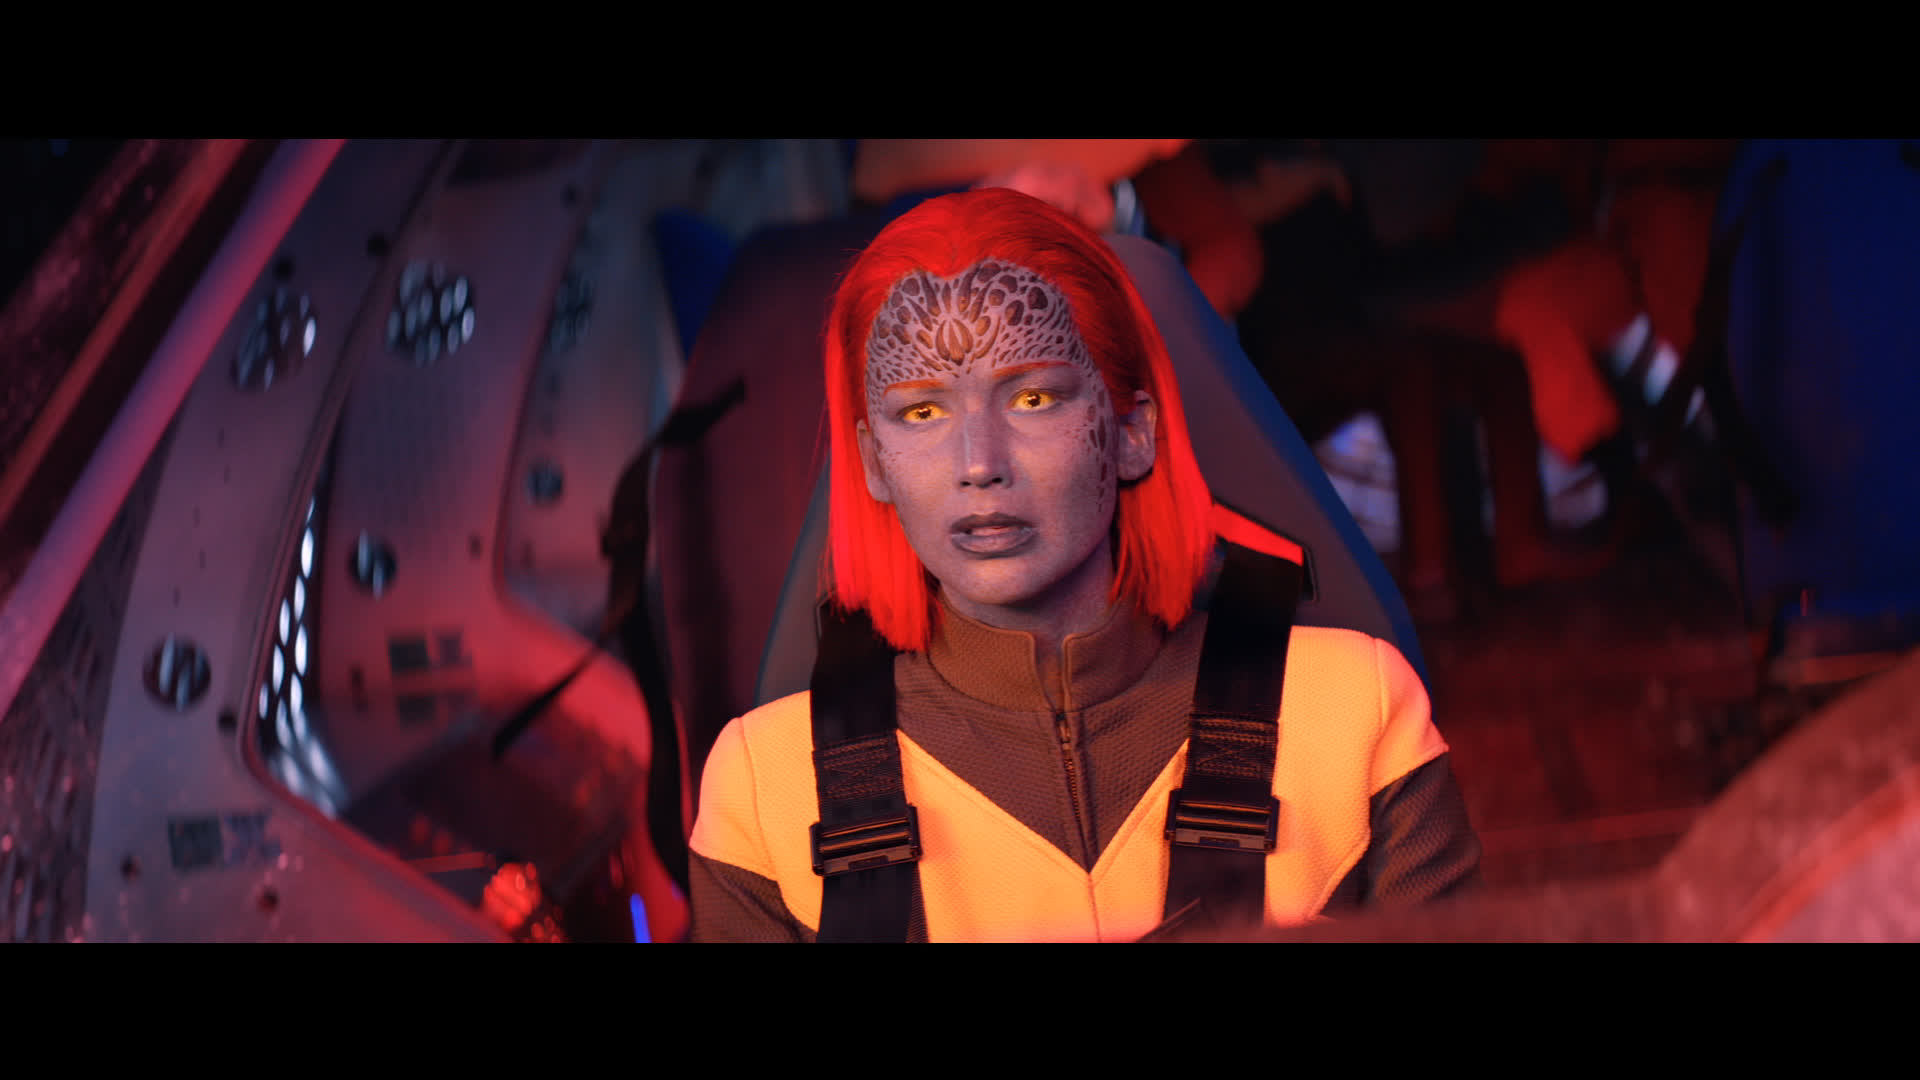 Jennifer Lawrence As Mystique X-Men Dark Phoenix Wallpapers